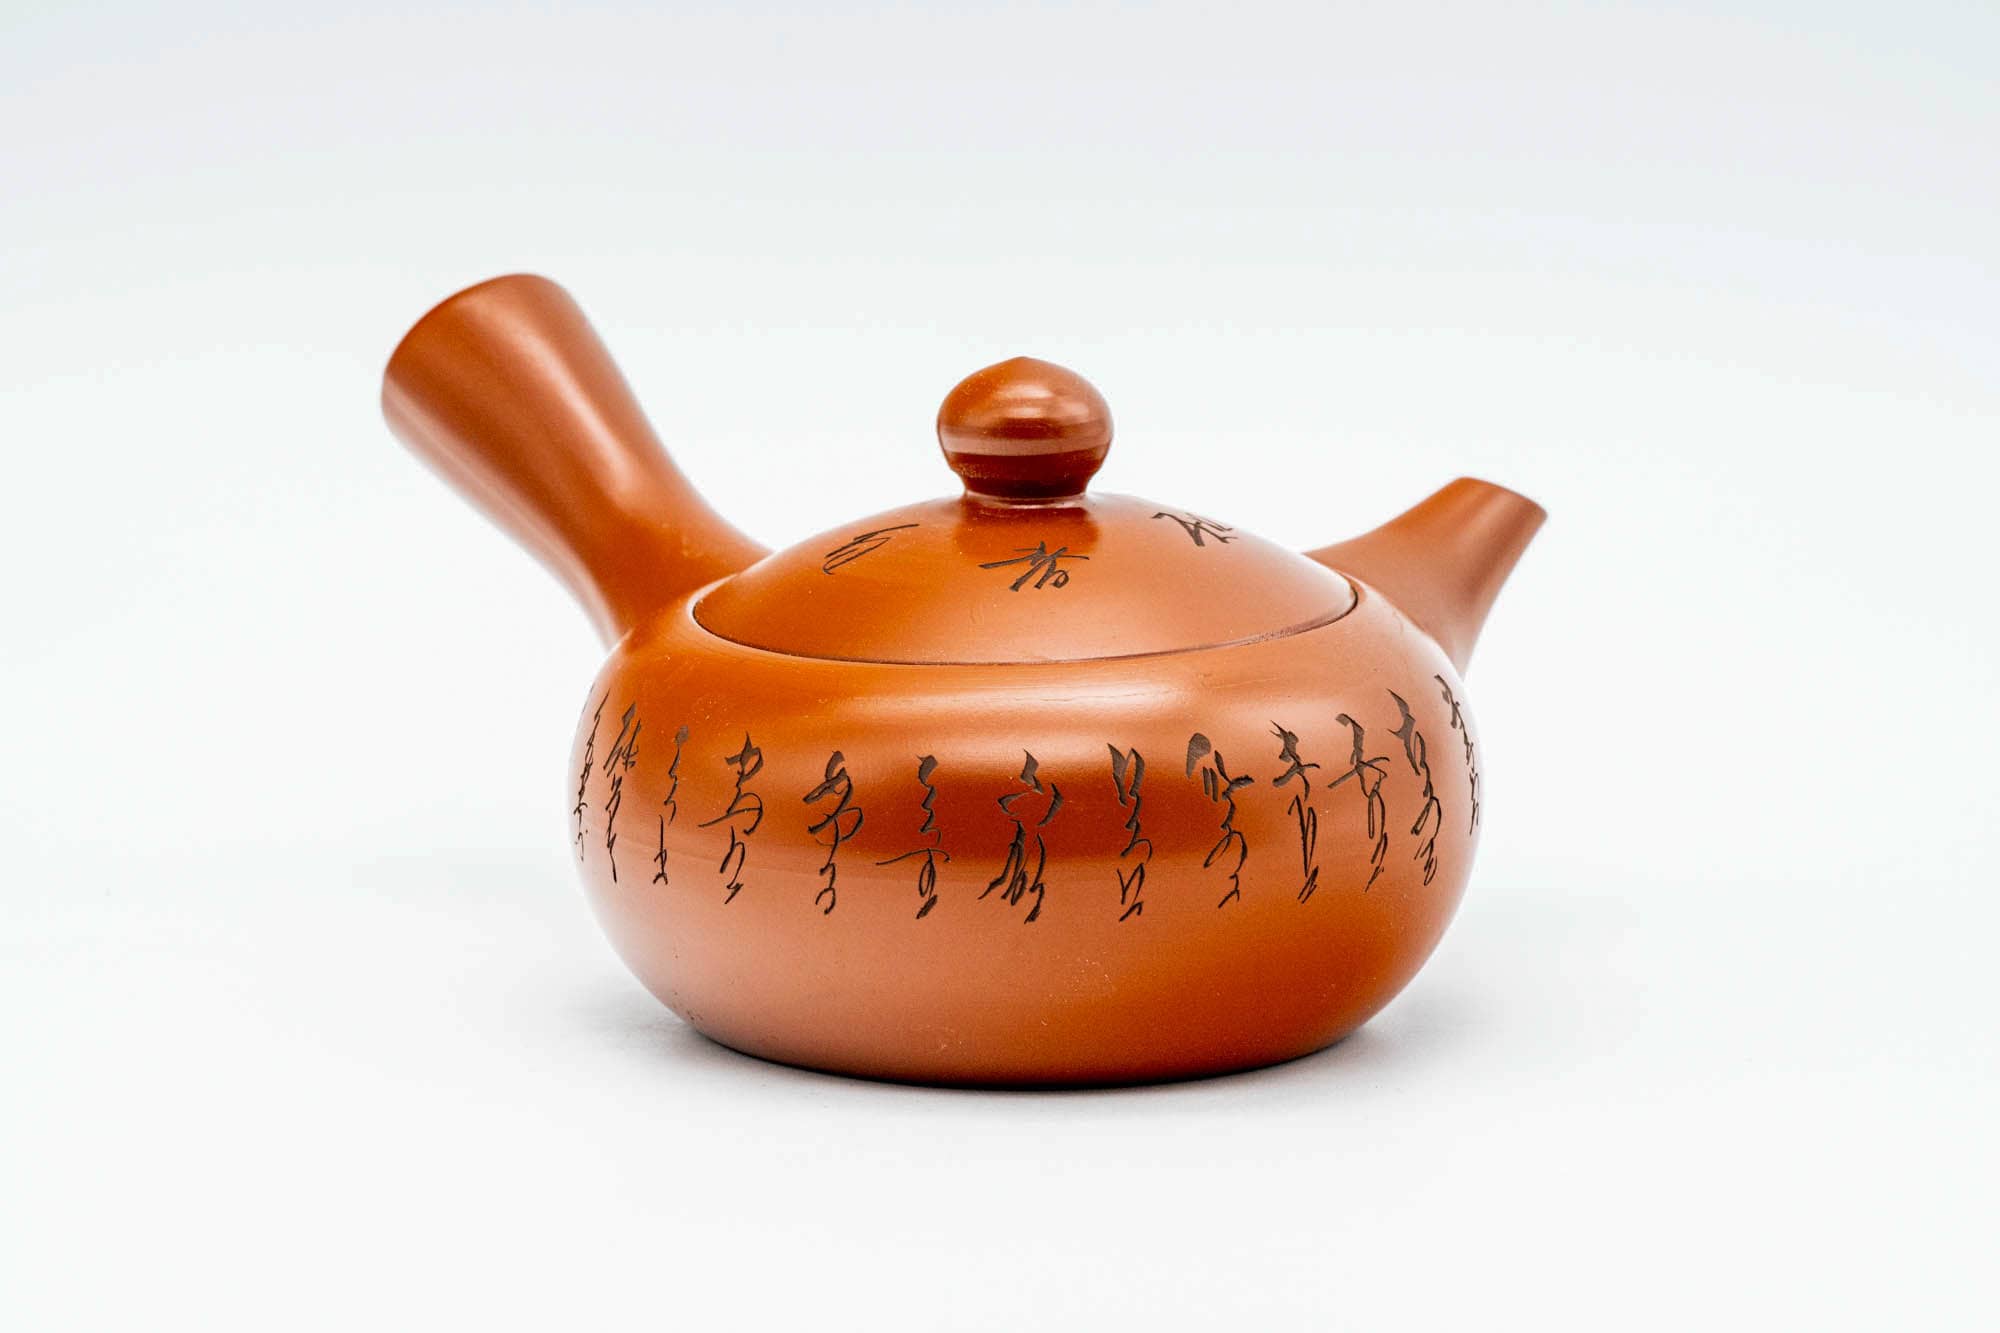 Japanese Tea Set - Calligraphy Engraved Tokoname-yaki Kyusu Teapot - Katakuchi Water Cooler - 5 Yunomi Teacups